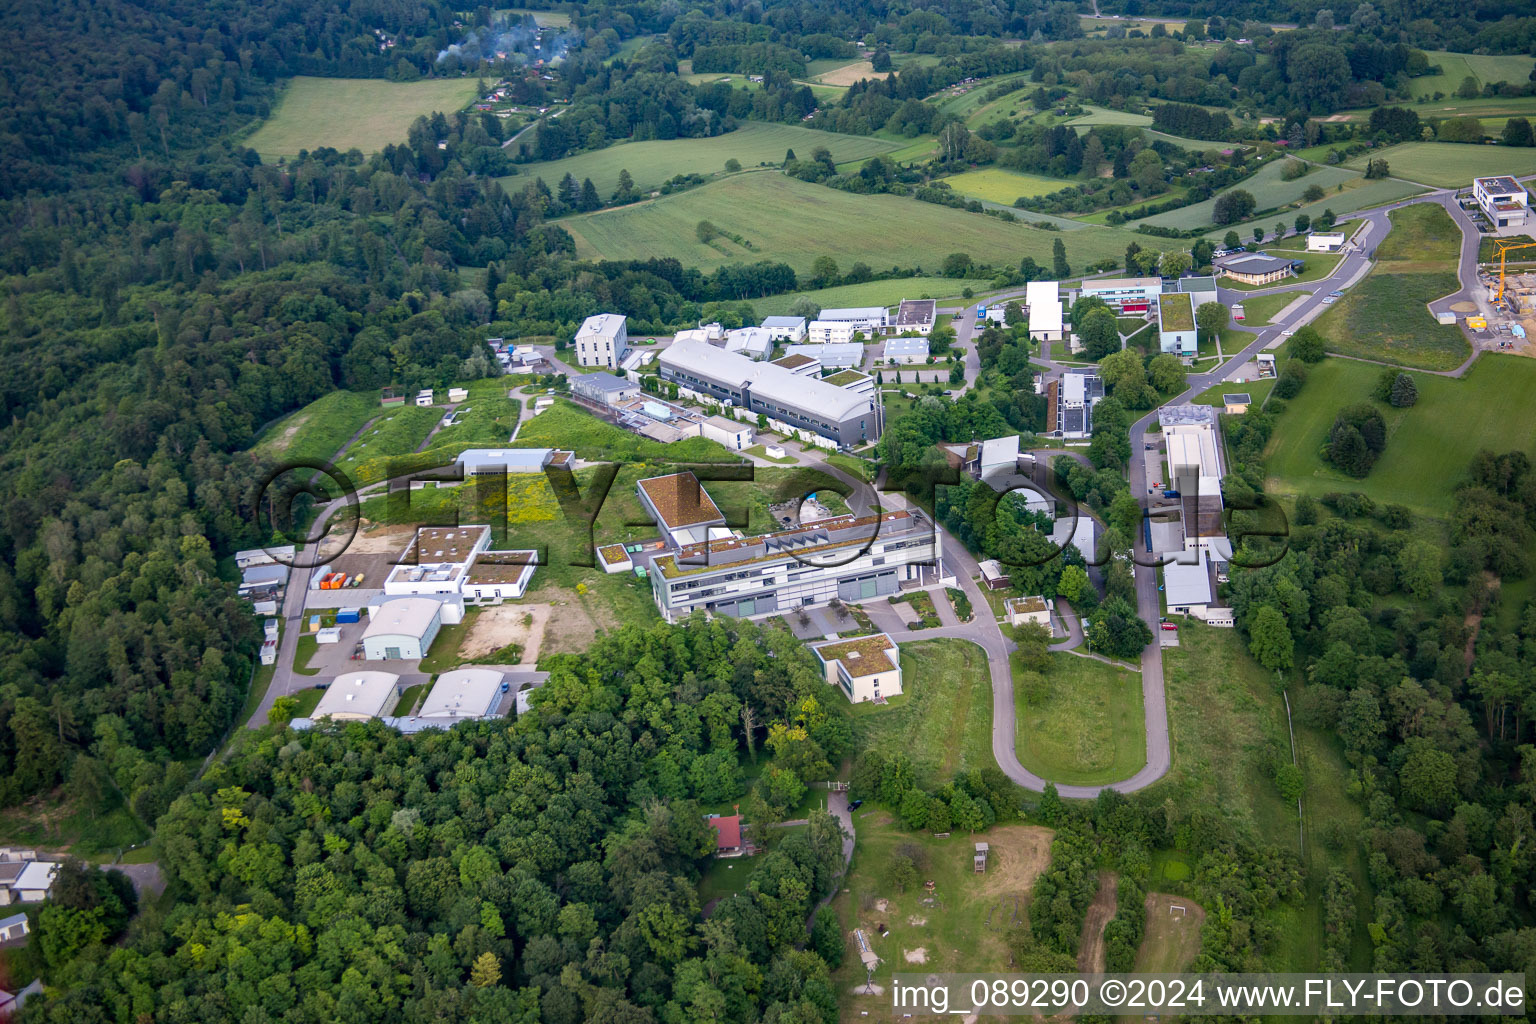 Vue aérienne de Complexe immobilier de l'Institut Fraunhofer de technologie chimique TIC à Pfinztal dans le département Bade-Wurtemberg, Allemagne